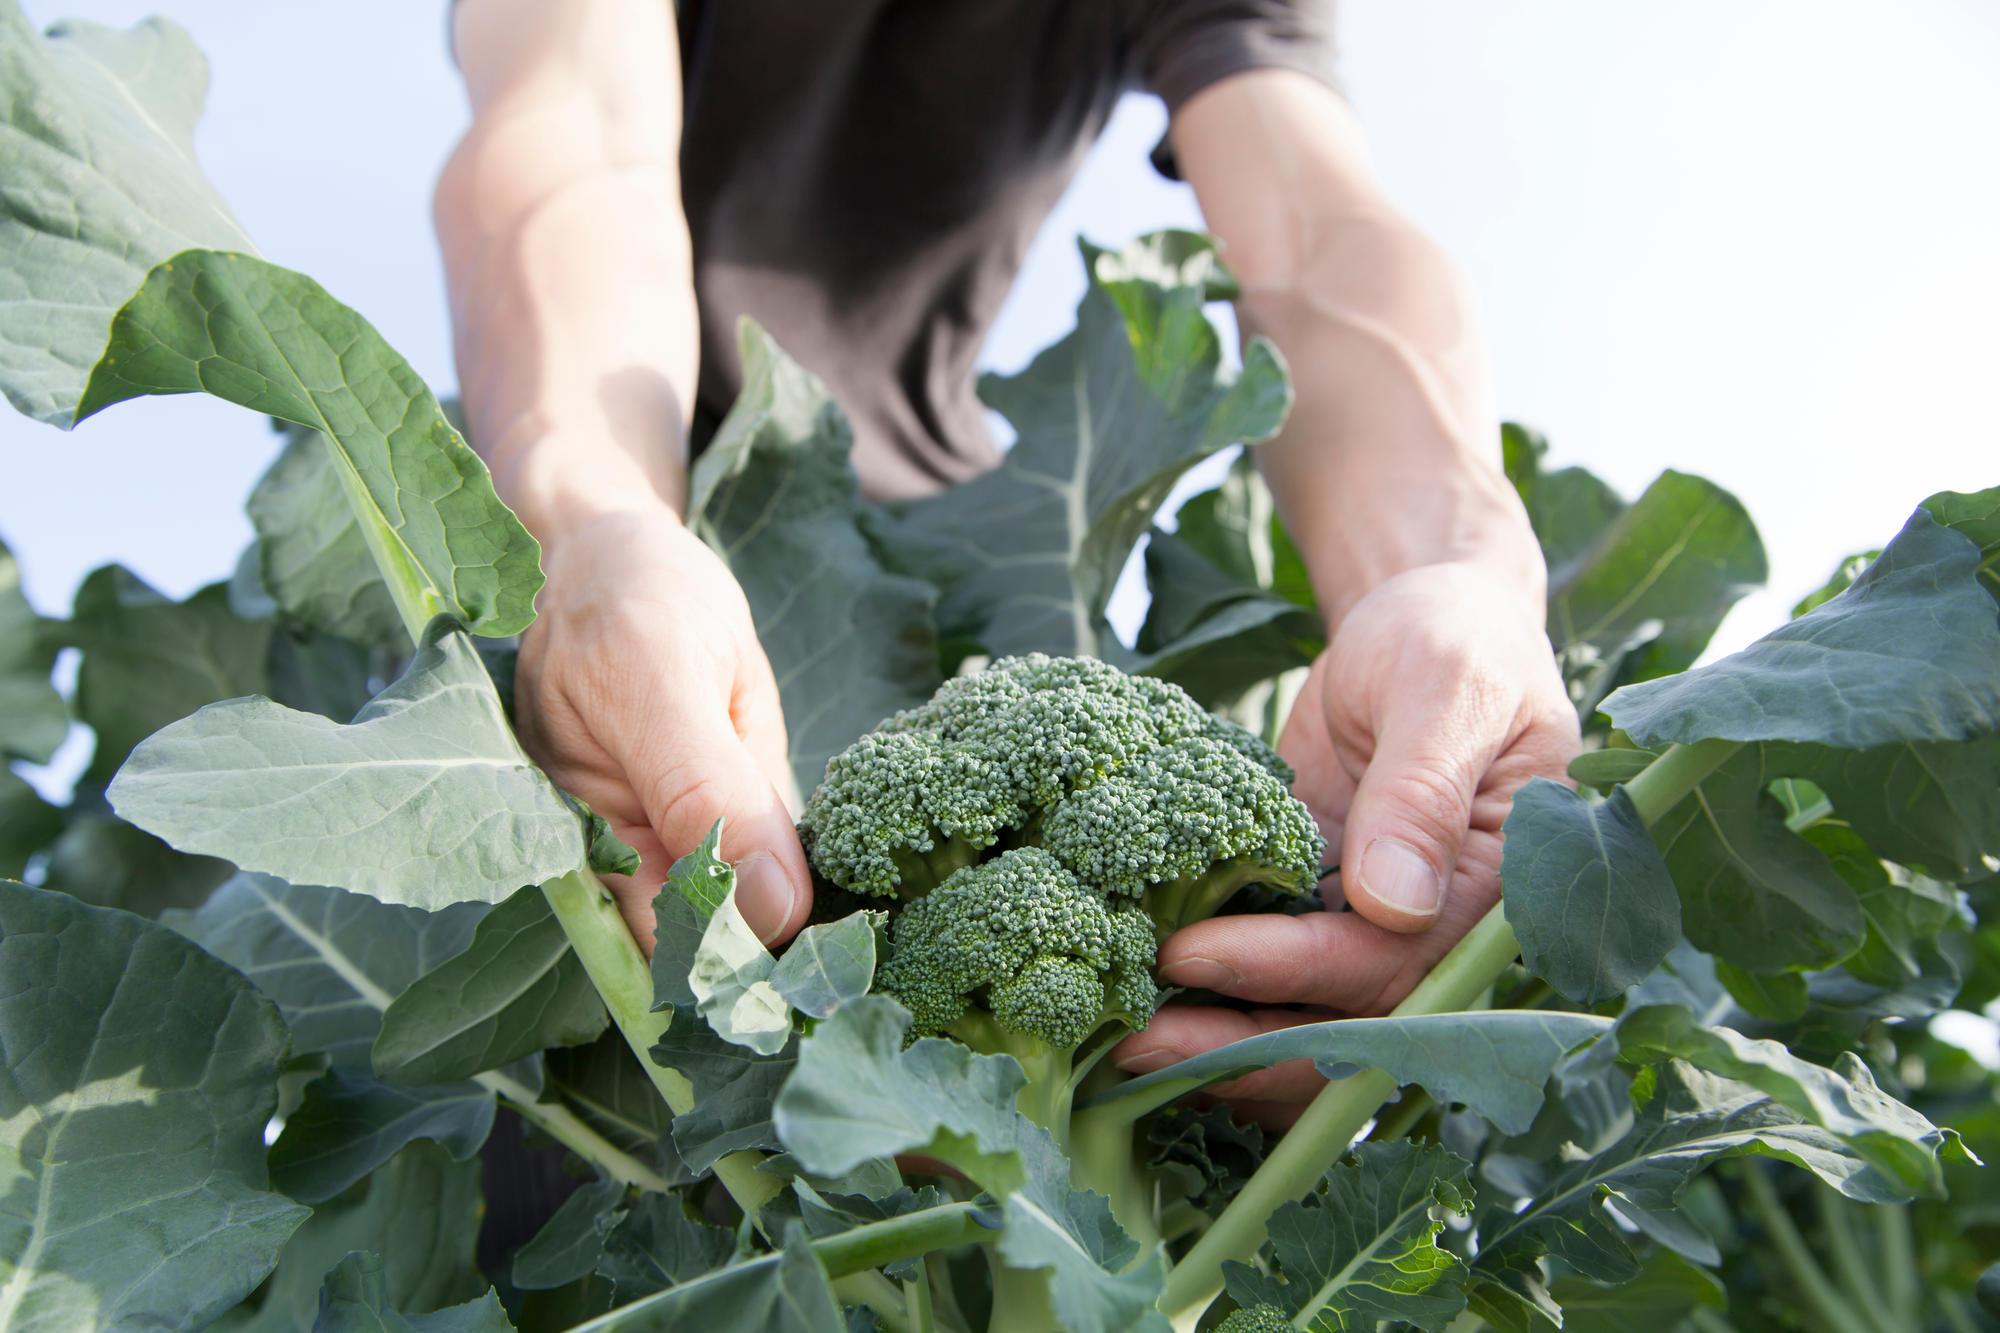 A person picks a head of broccoli.